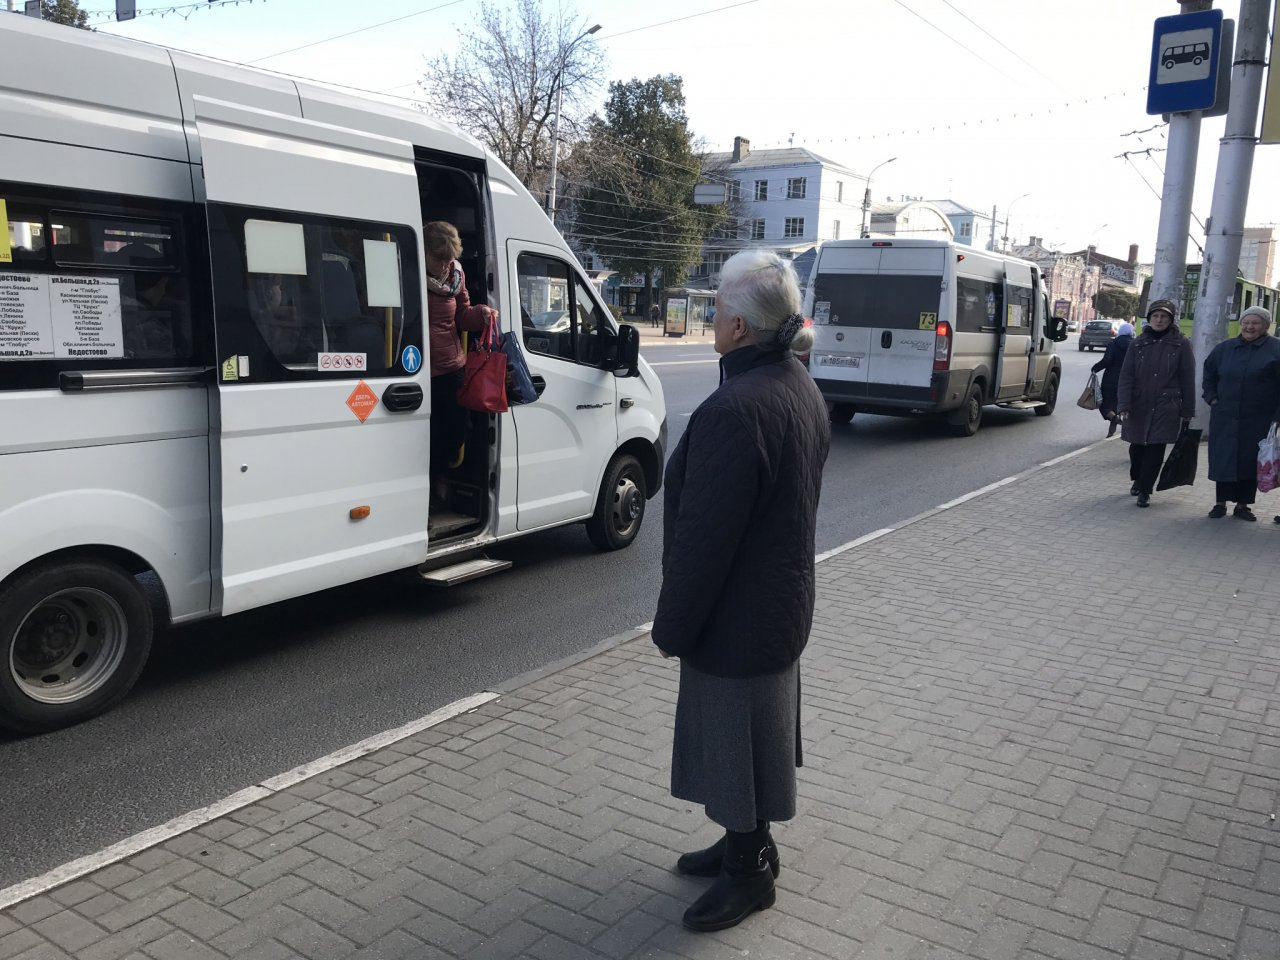 "Маршруток №46 рано утром вообще нет": история рязанца об общественном транспорте